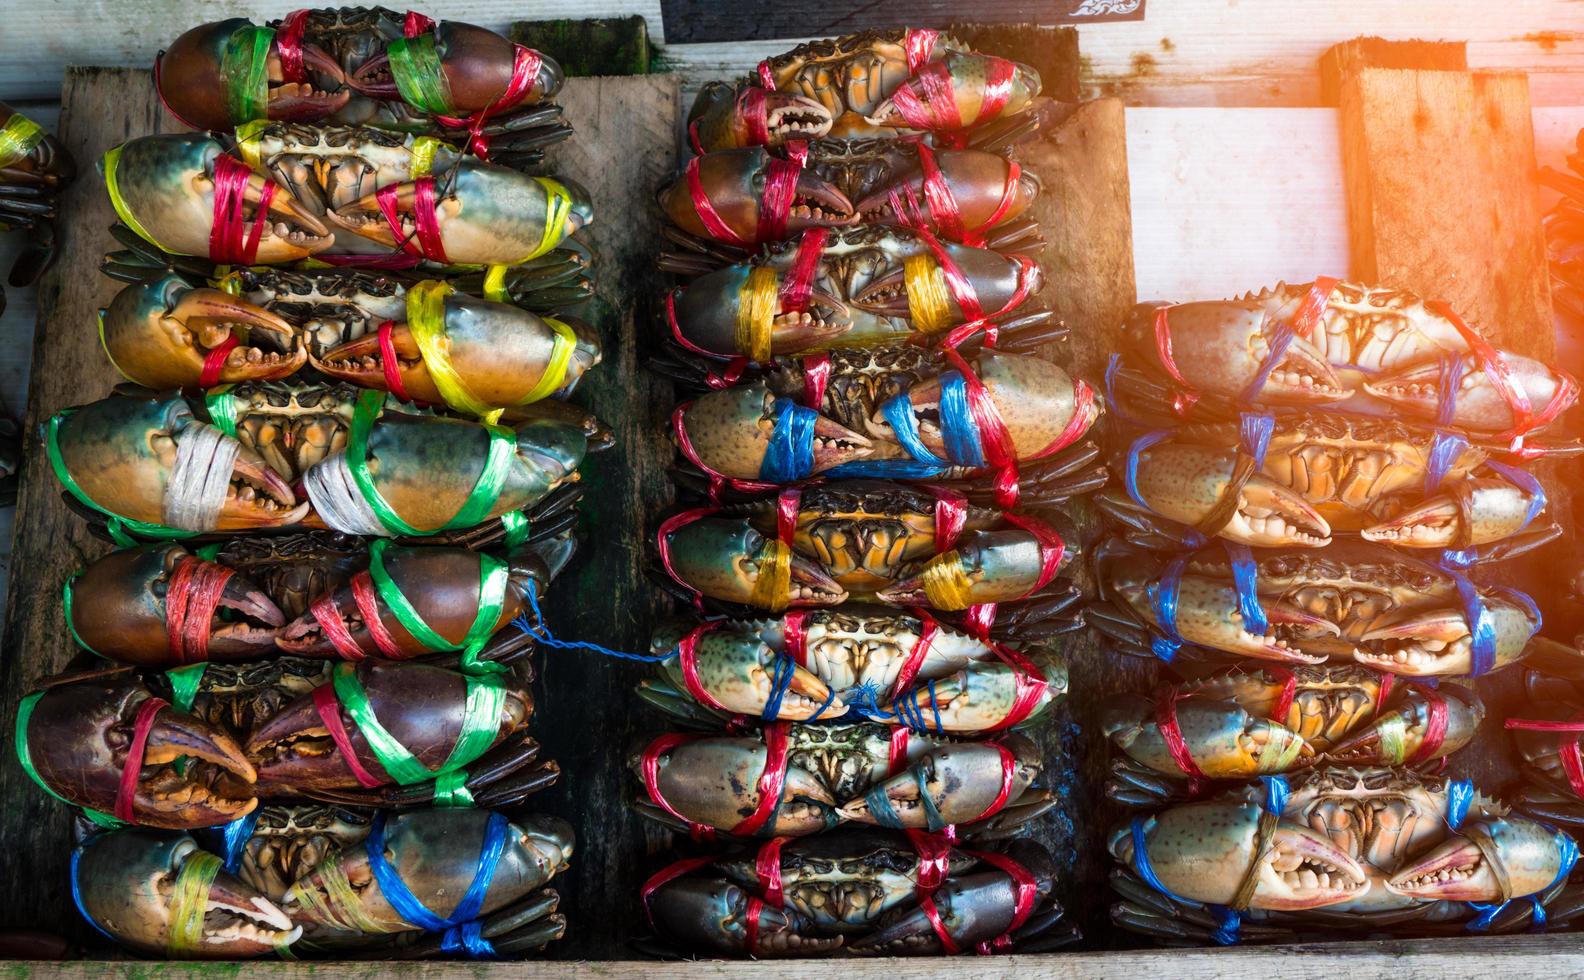 escila serrata. los cangrejos frescos están atados con cuerdas de plástico de colores y dispuestos en filas ordenadas en el mercado de mariscos en tailandia. materias primas para el concepto de restaurantes de mariscos. foto